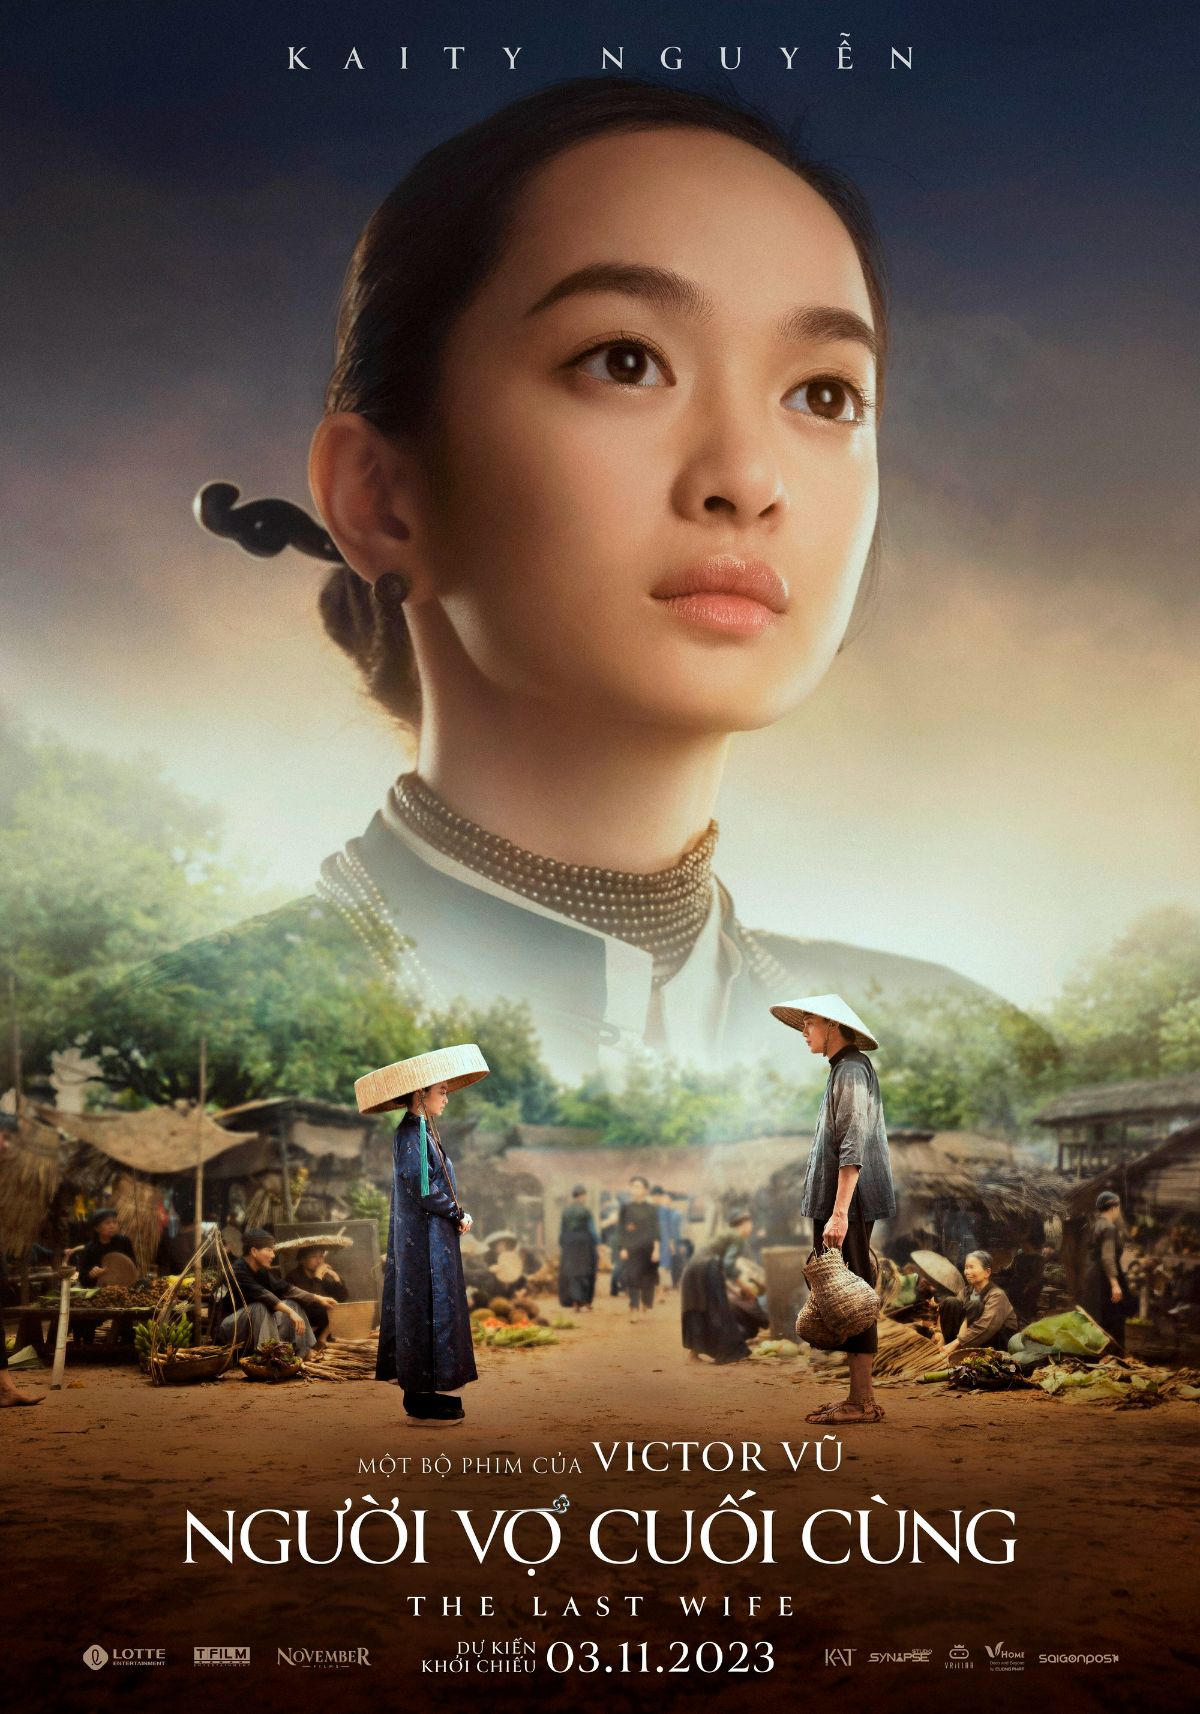 Bộ phim Người Vợ Cuối Cùng được chuyển thể dựa trên tiểu thuyết Hồ Oán Hận của nhà văn Hồng Thái - bố vợ đạo diễn Victor Vũ